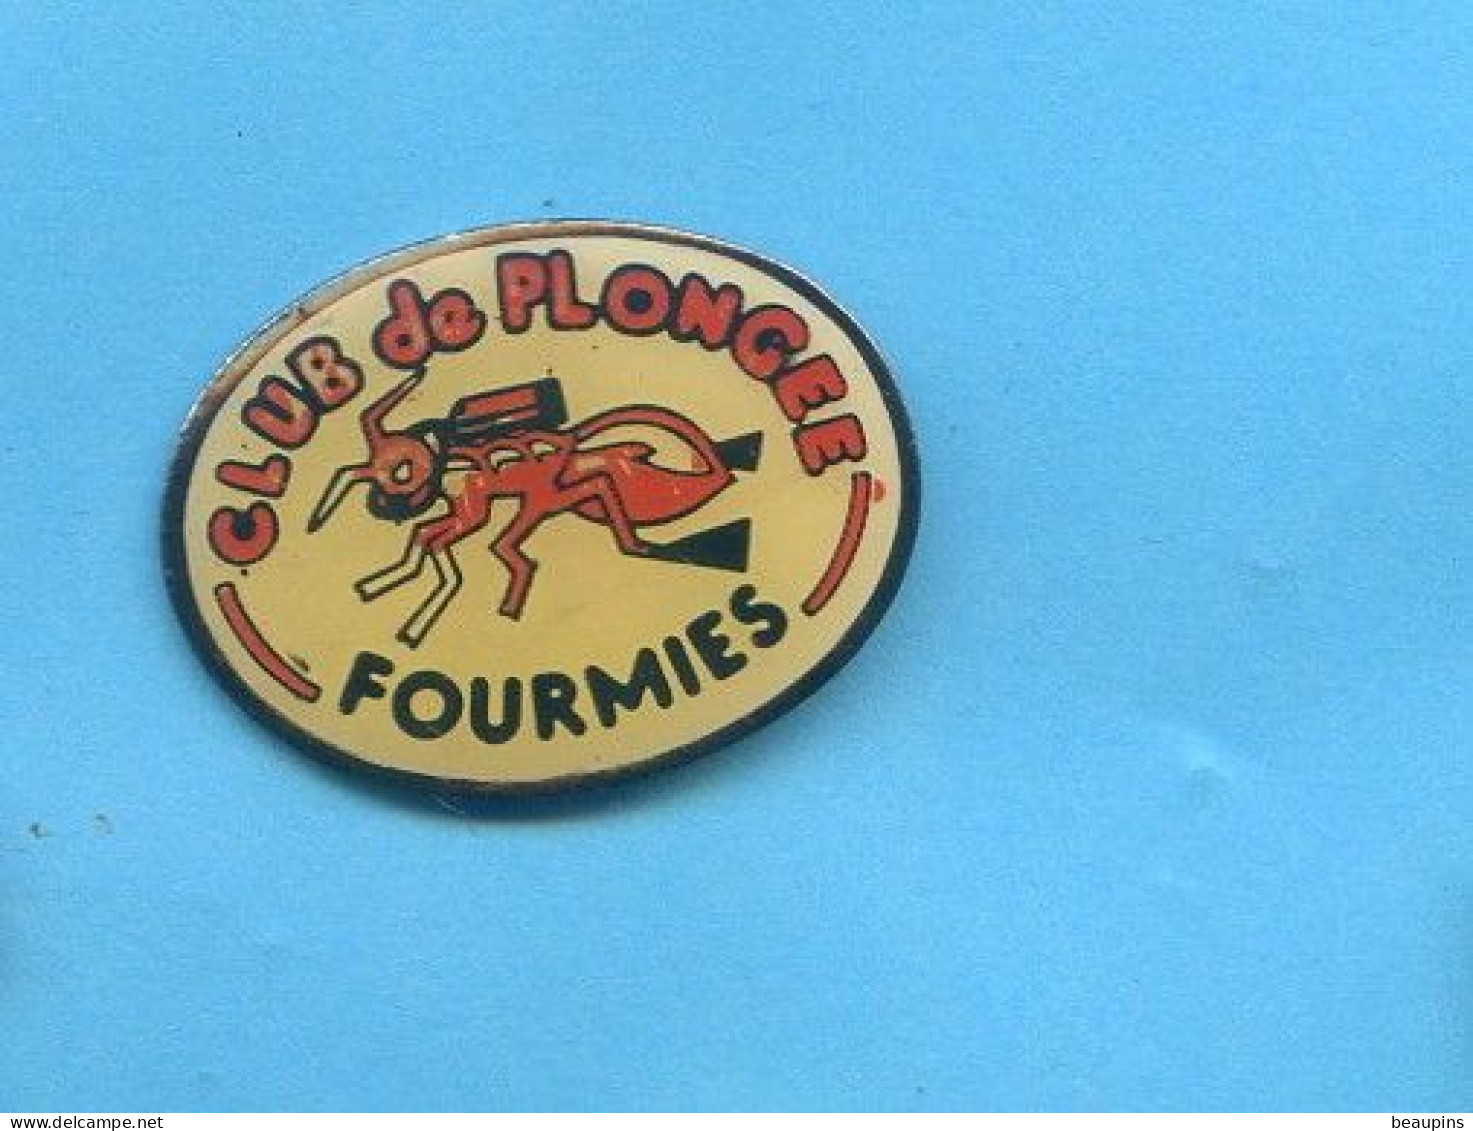 Rare Pins Plongee Club Fourmies Fr172 - Buceo